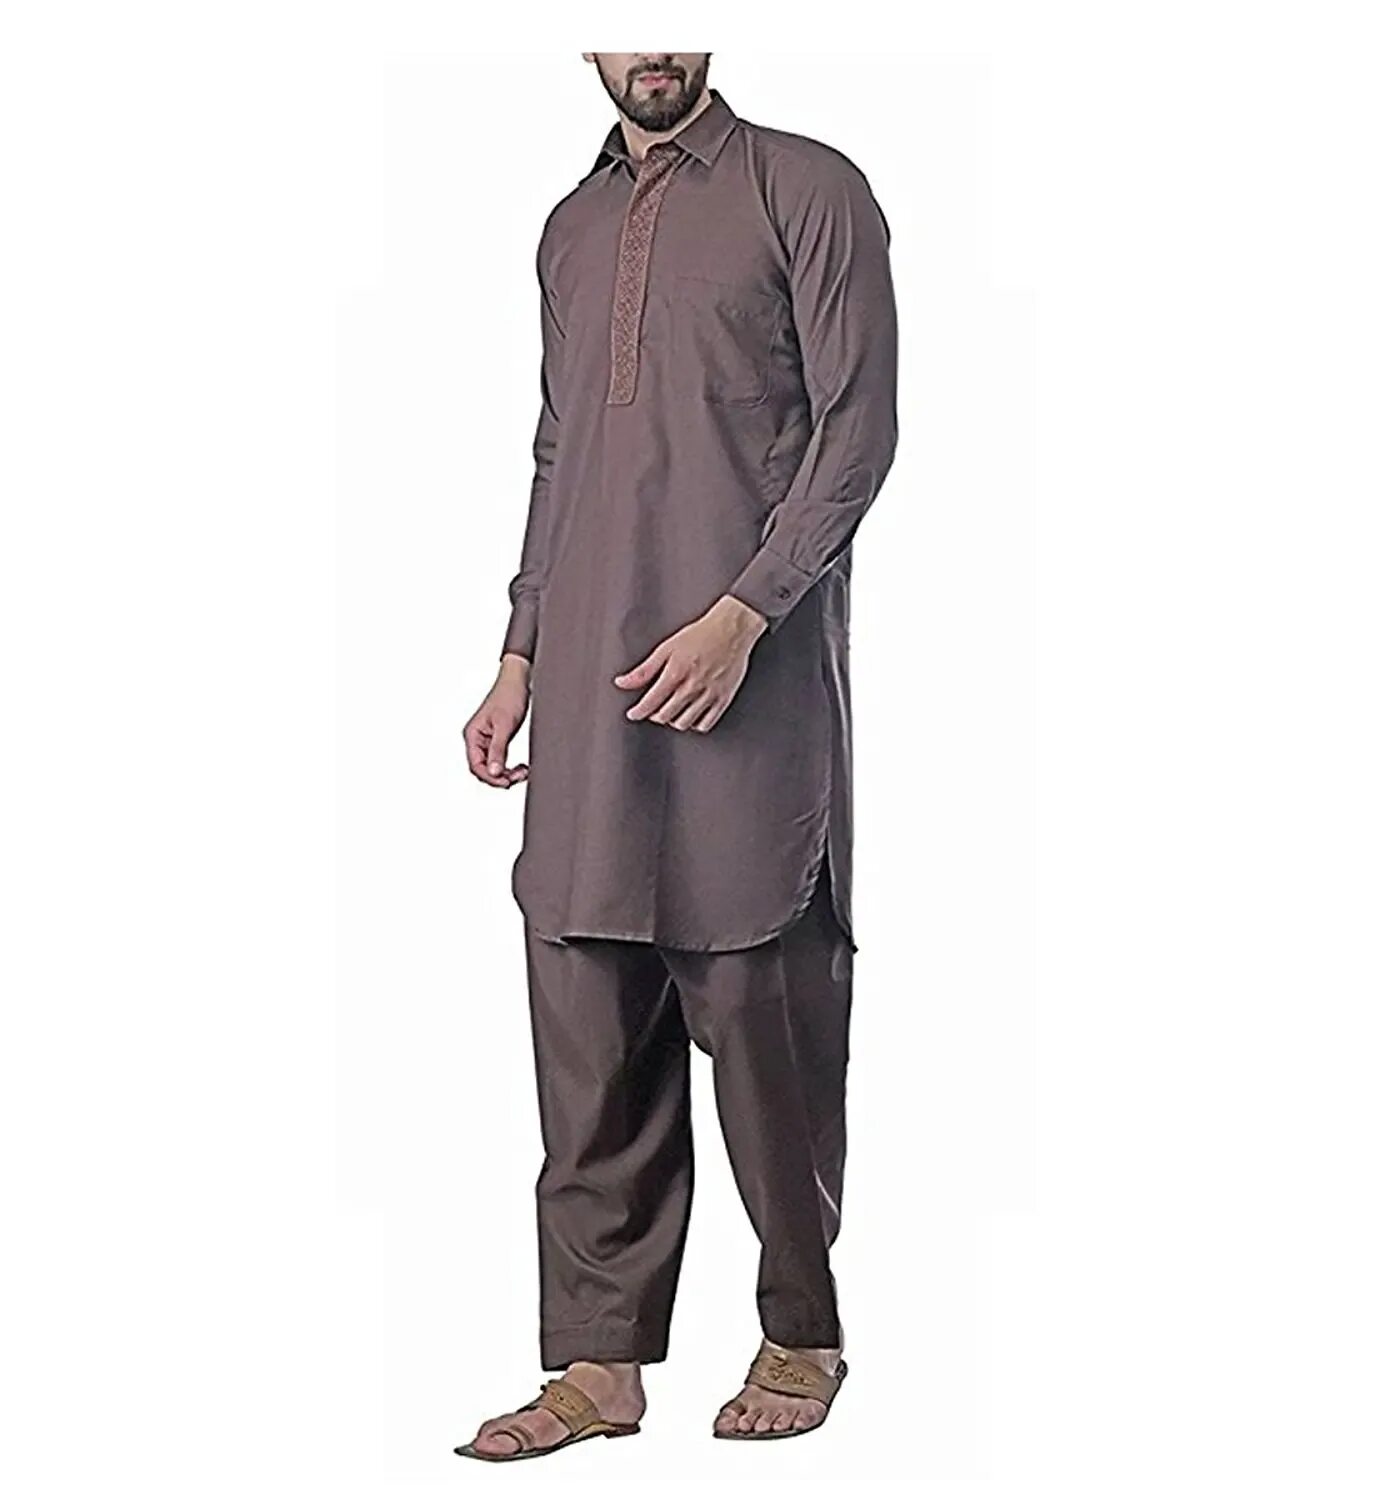 Мусульманская для мужчин купить. Камис Исламская мужская одежда. Исламские Камис костюмы мужские. Пакистанский Камис. Sajda мусульманская мужская одежда.